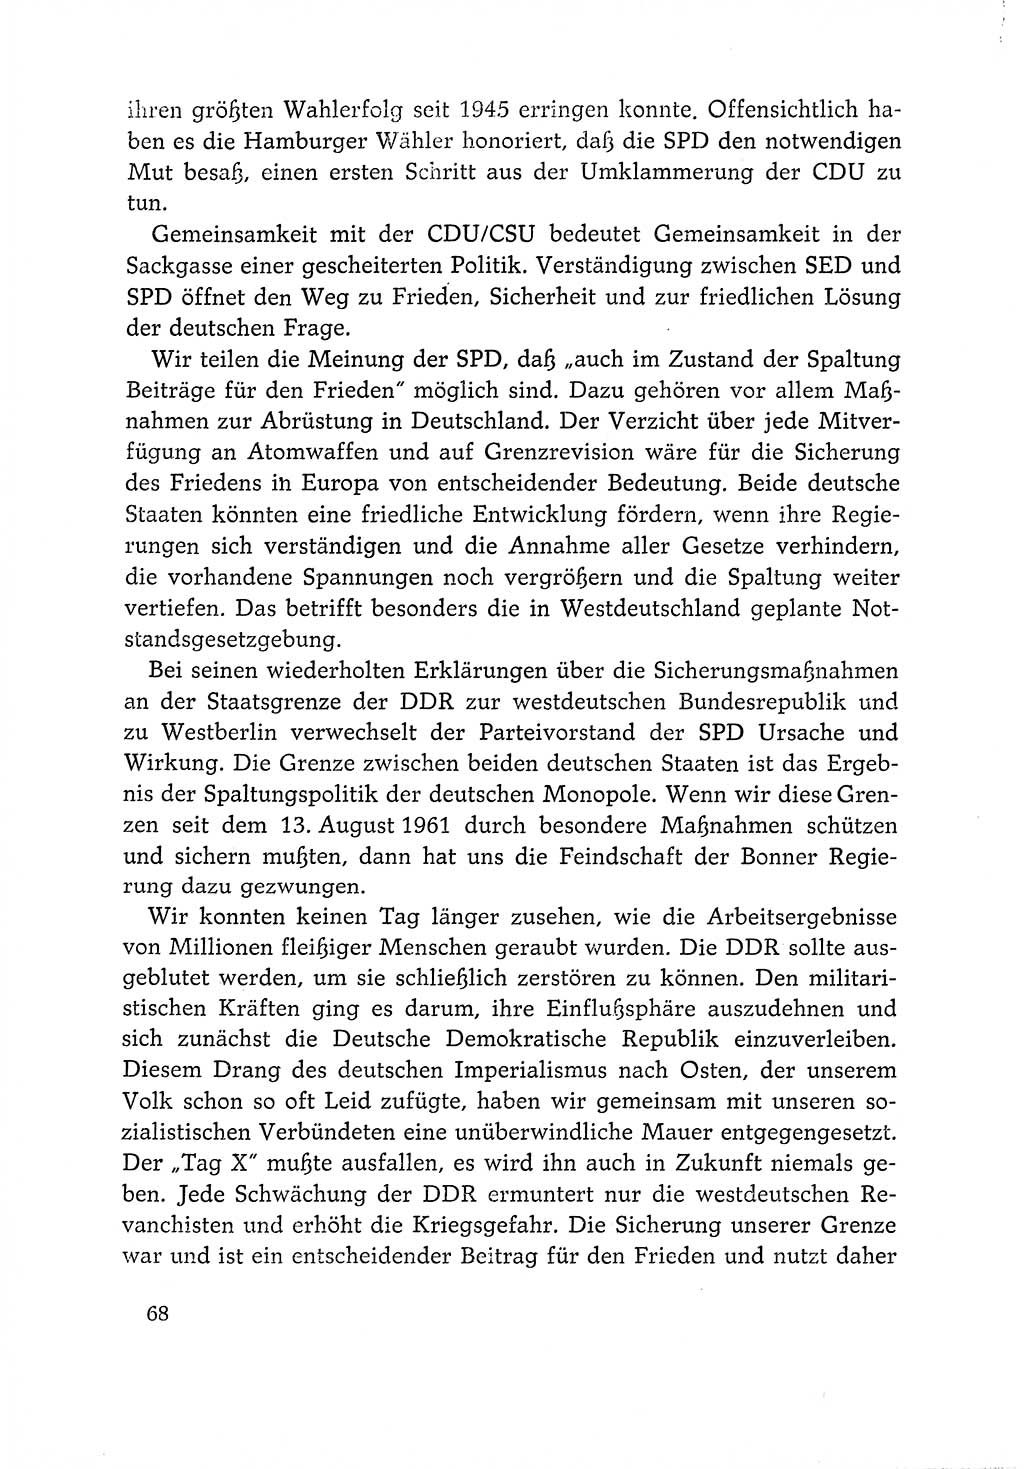 Dokumente der Sozialistischen Einheitspartei Deutschlands (SED) [Deutsche Demokratische Republik (DDR)] 1966-1967, Seite 68 (Dok. SED DDR 1966-1967, S. 68)